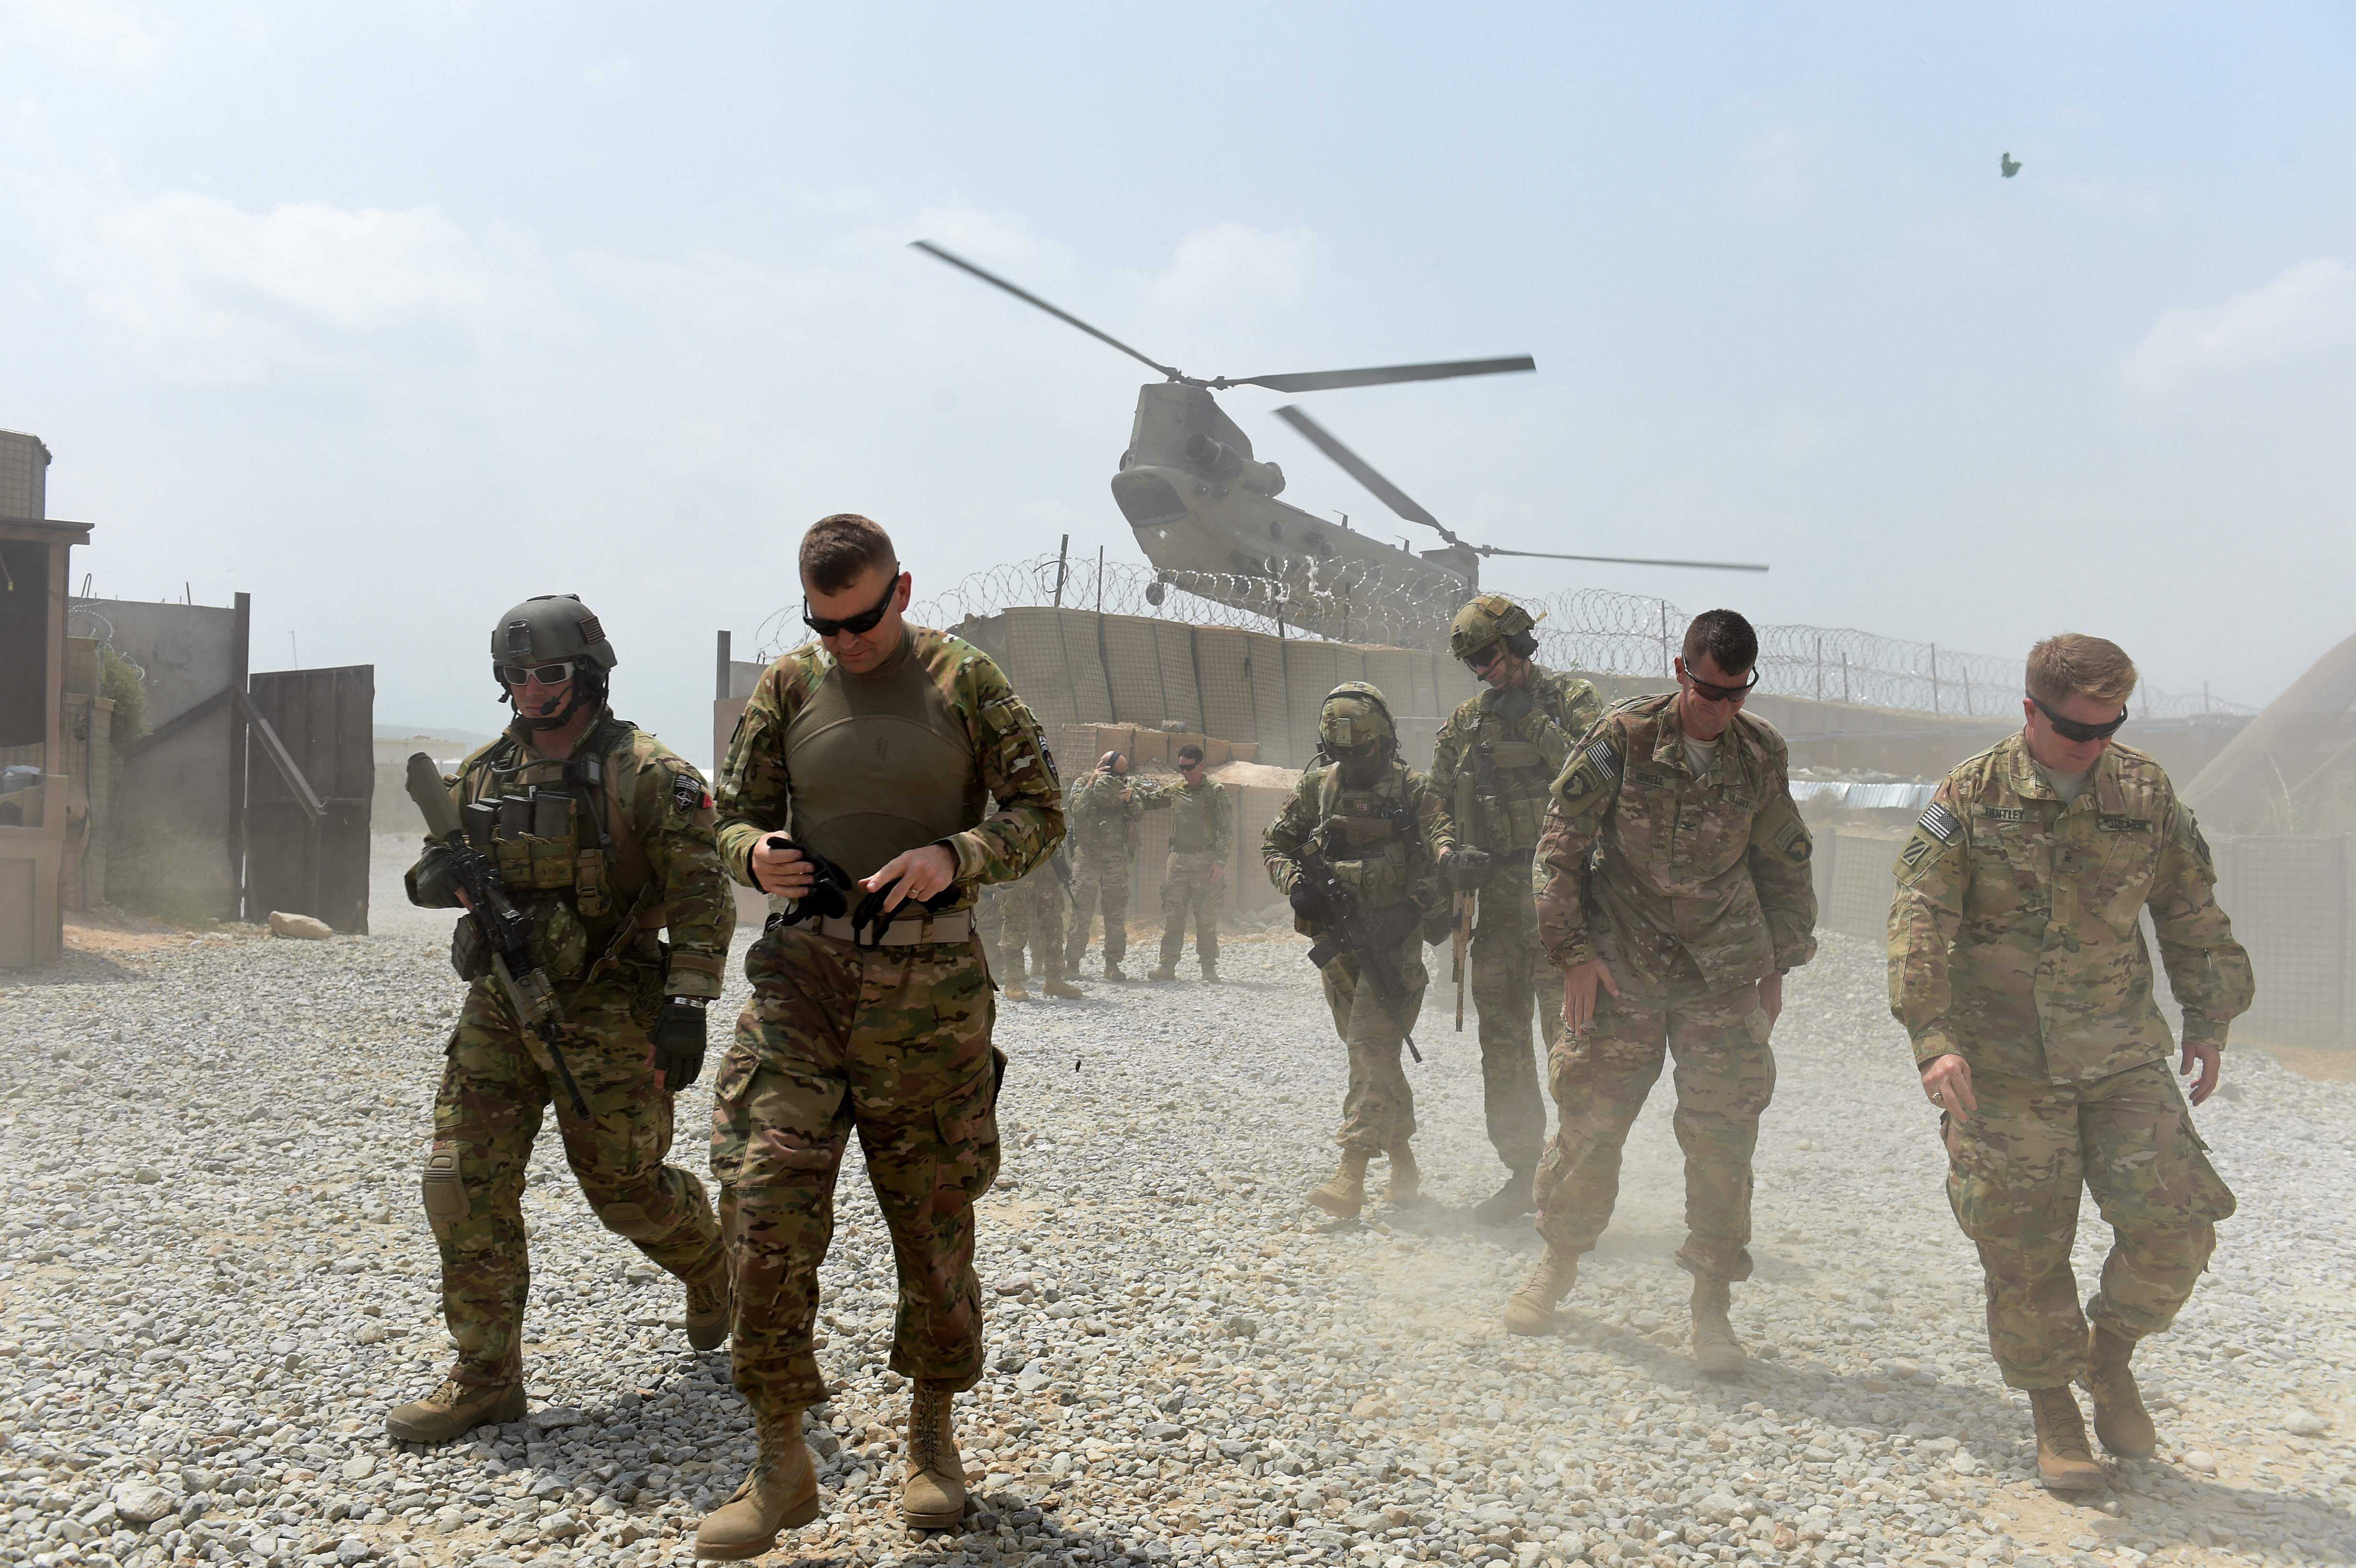 原创阿富汗一士兵开枪打死2名美军在别人土地上霸道撒野的最终下场